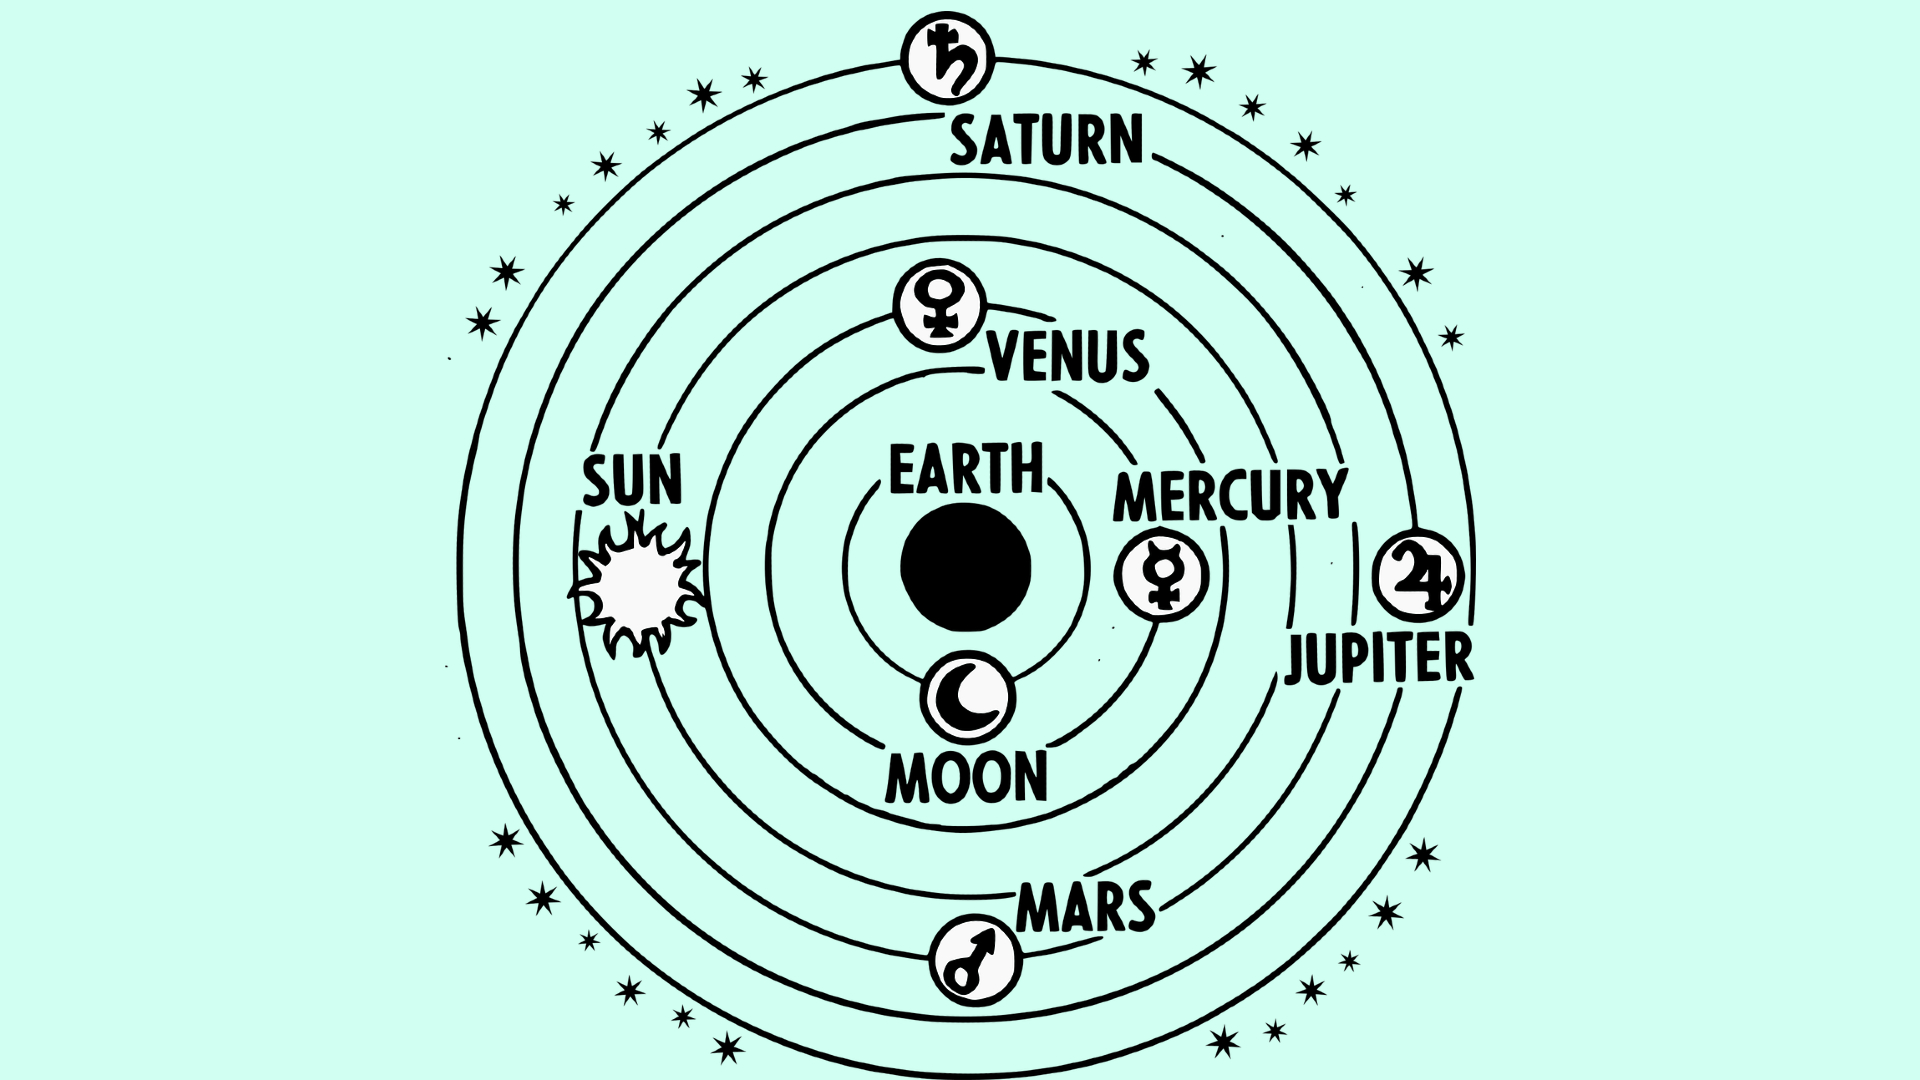 Modelo Geocêntrico - Origem e explicação deste modelo astronômico (Imagem: OpenClipart-Vectors/Pixabay)